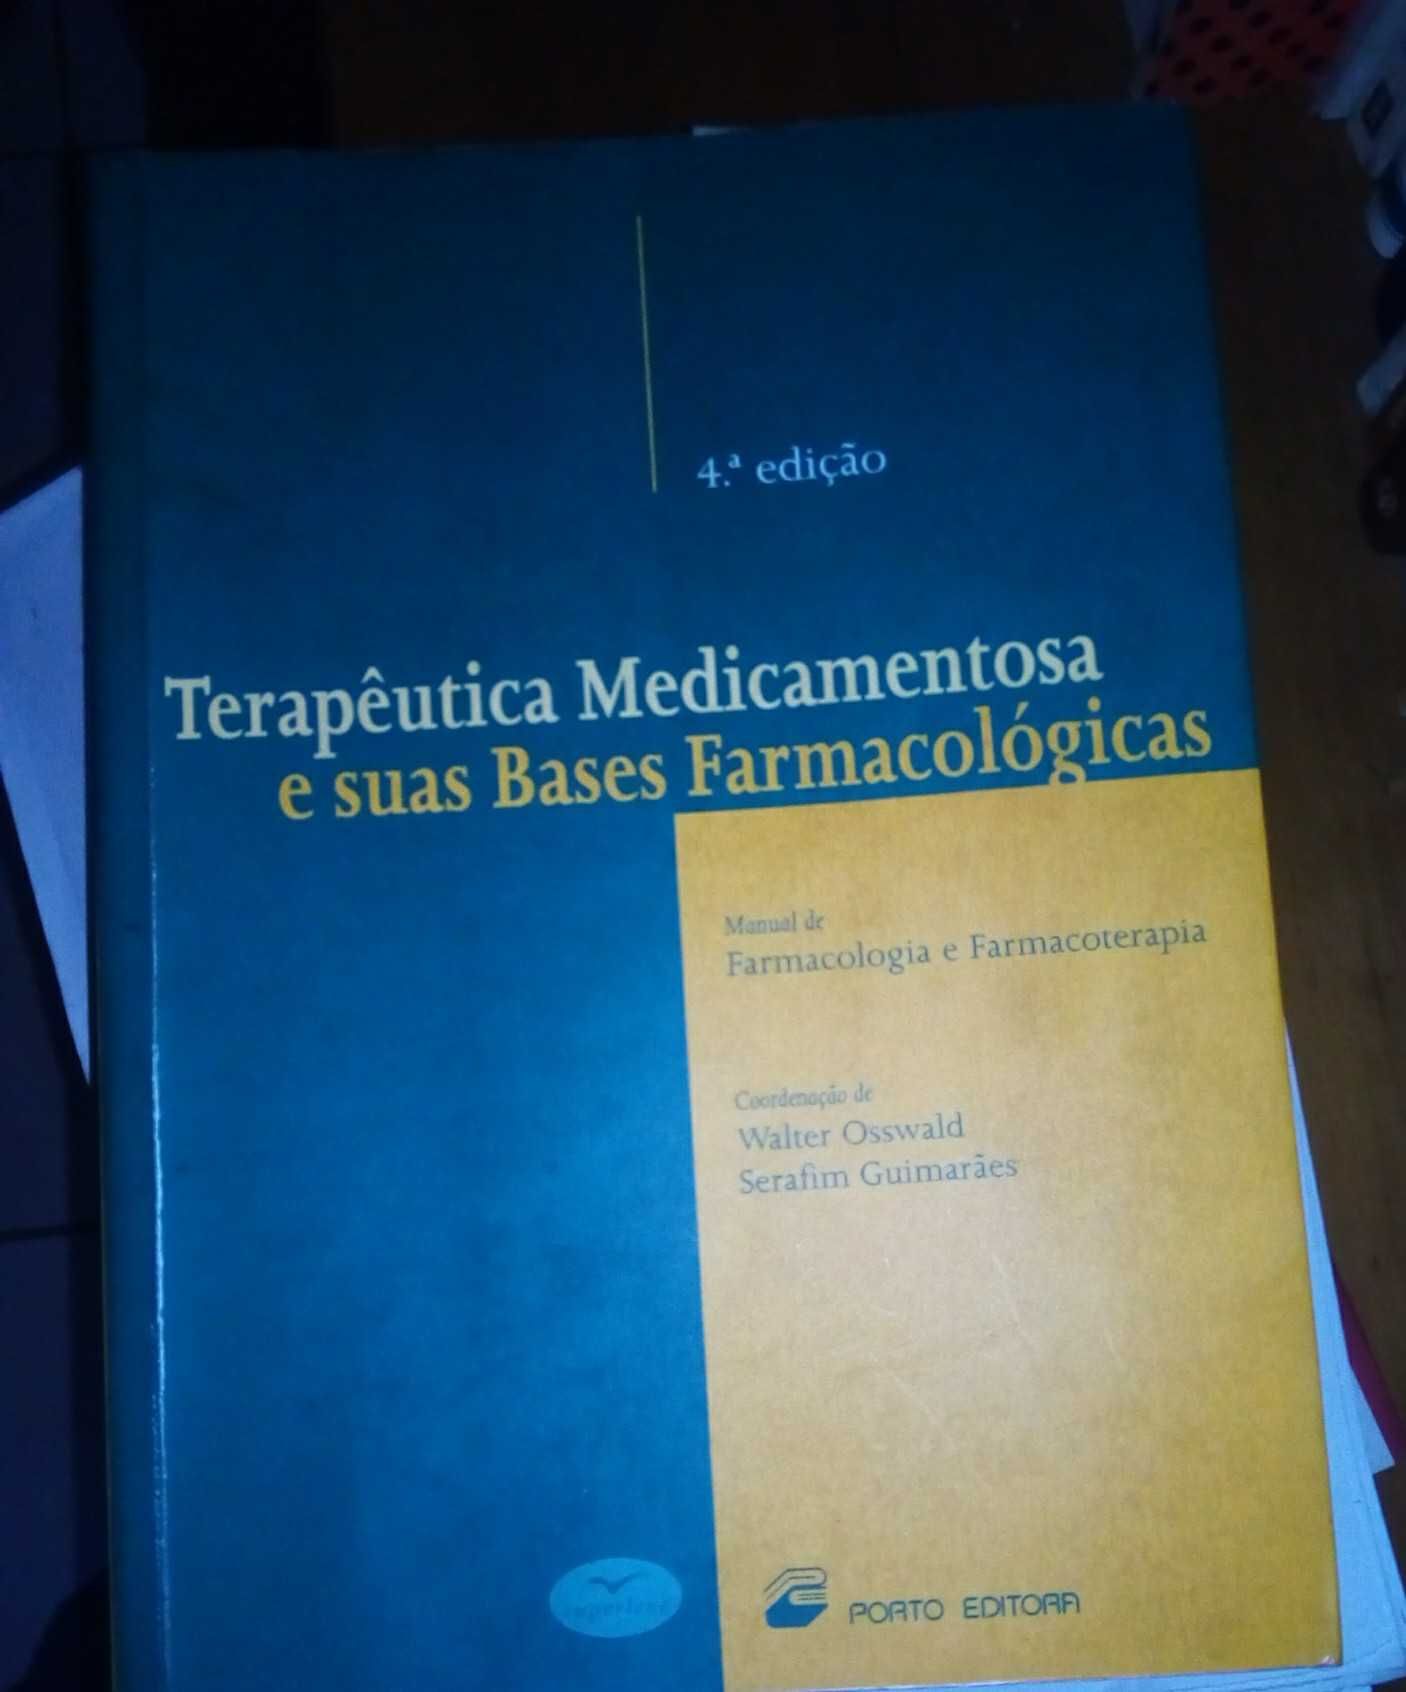 Livro "Terapêutica medicamentosa e suas bases farmacológicas"